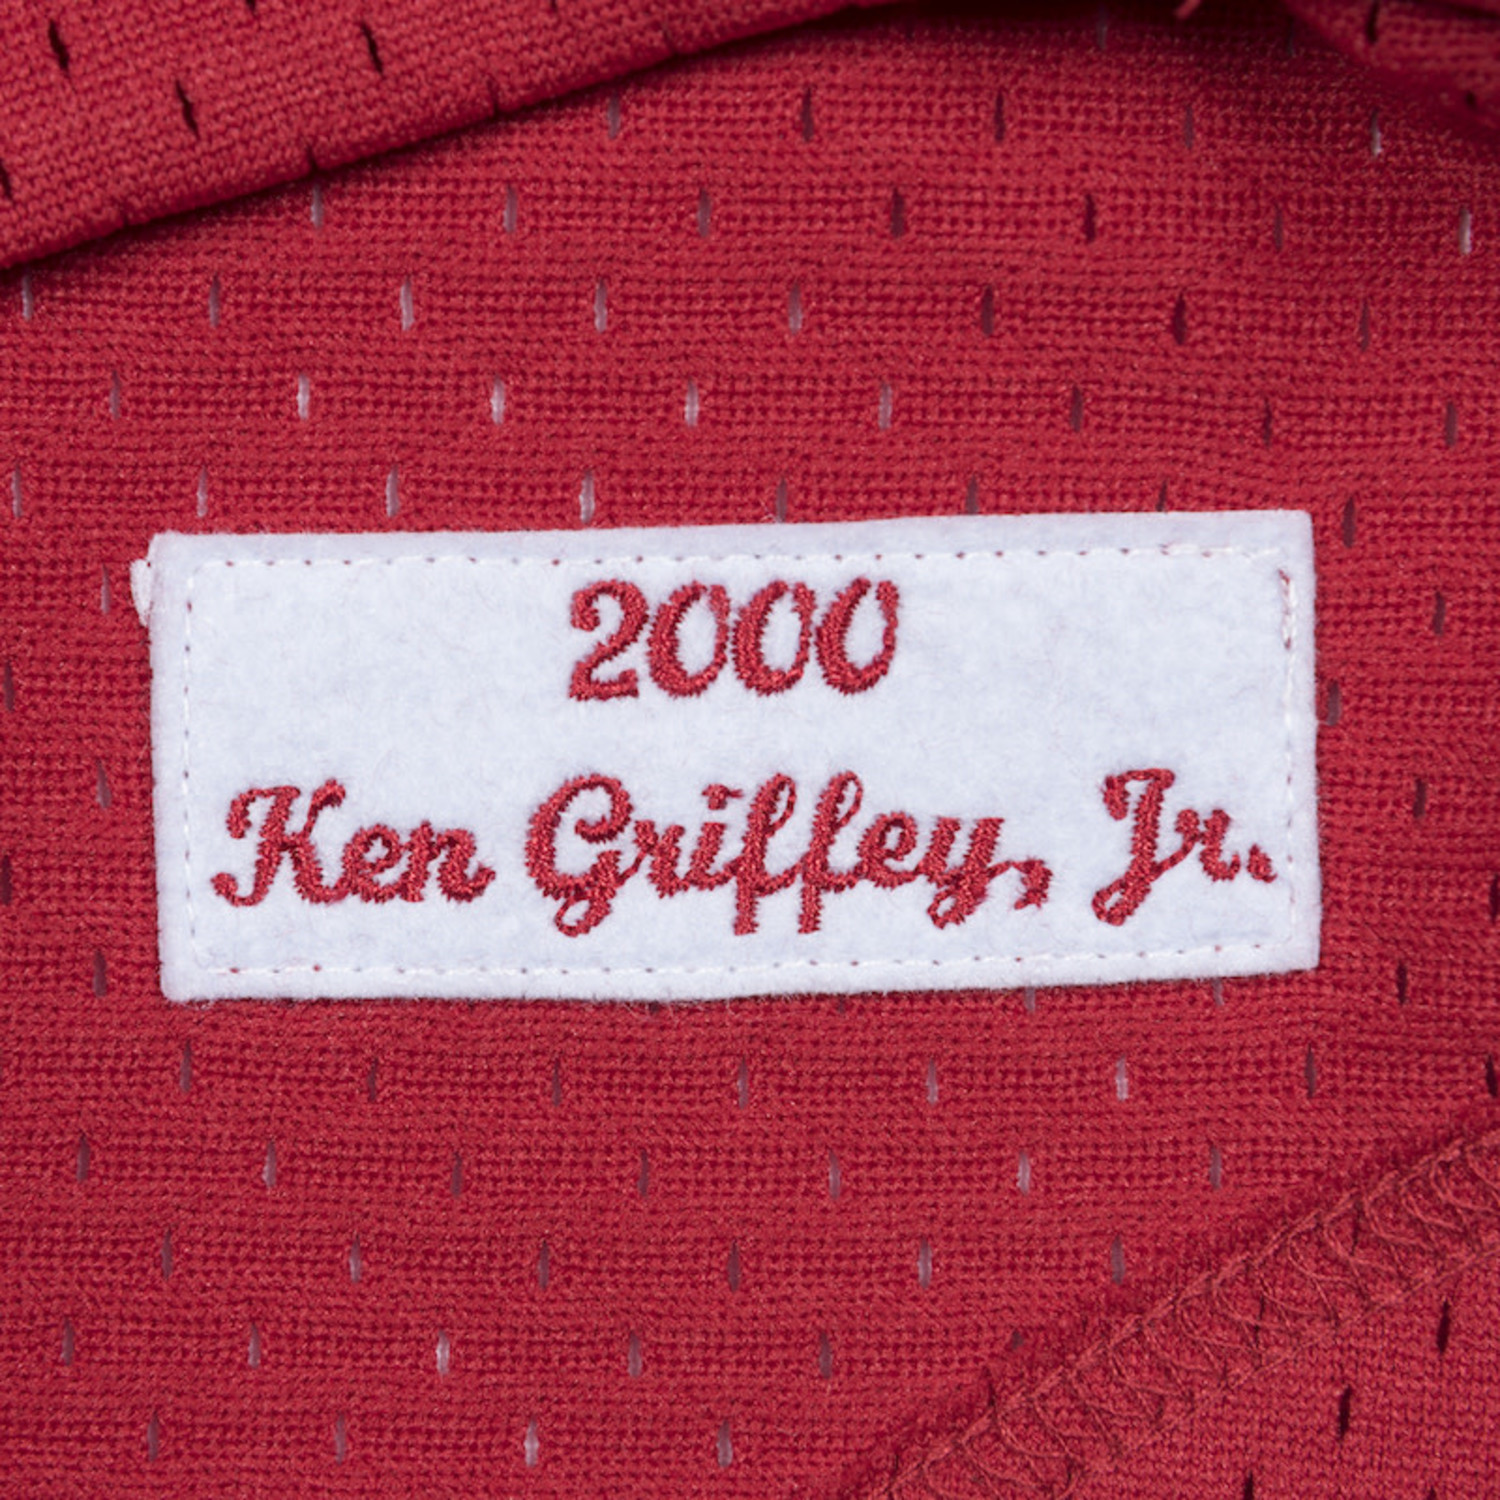  Ken Griffey Jr Cincinnati Reds Men's Authentic 2000